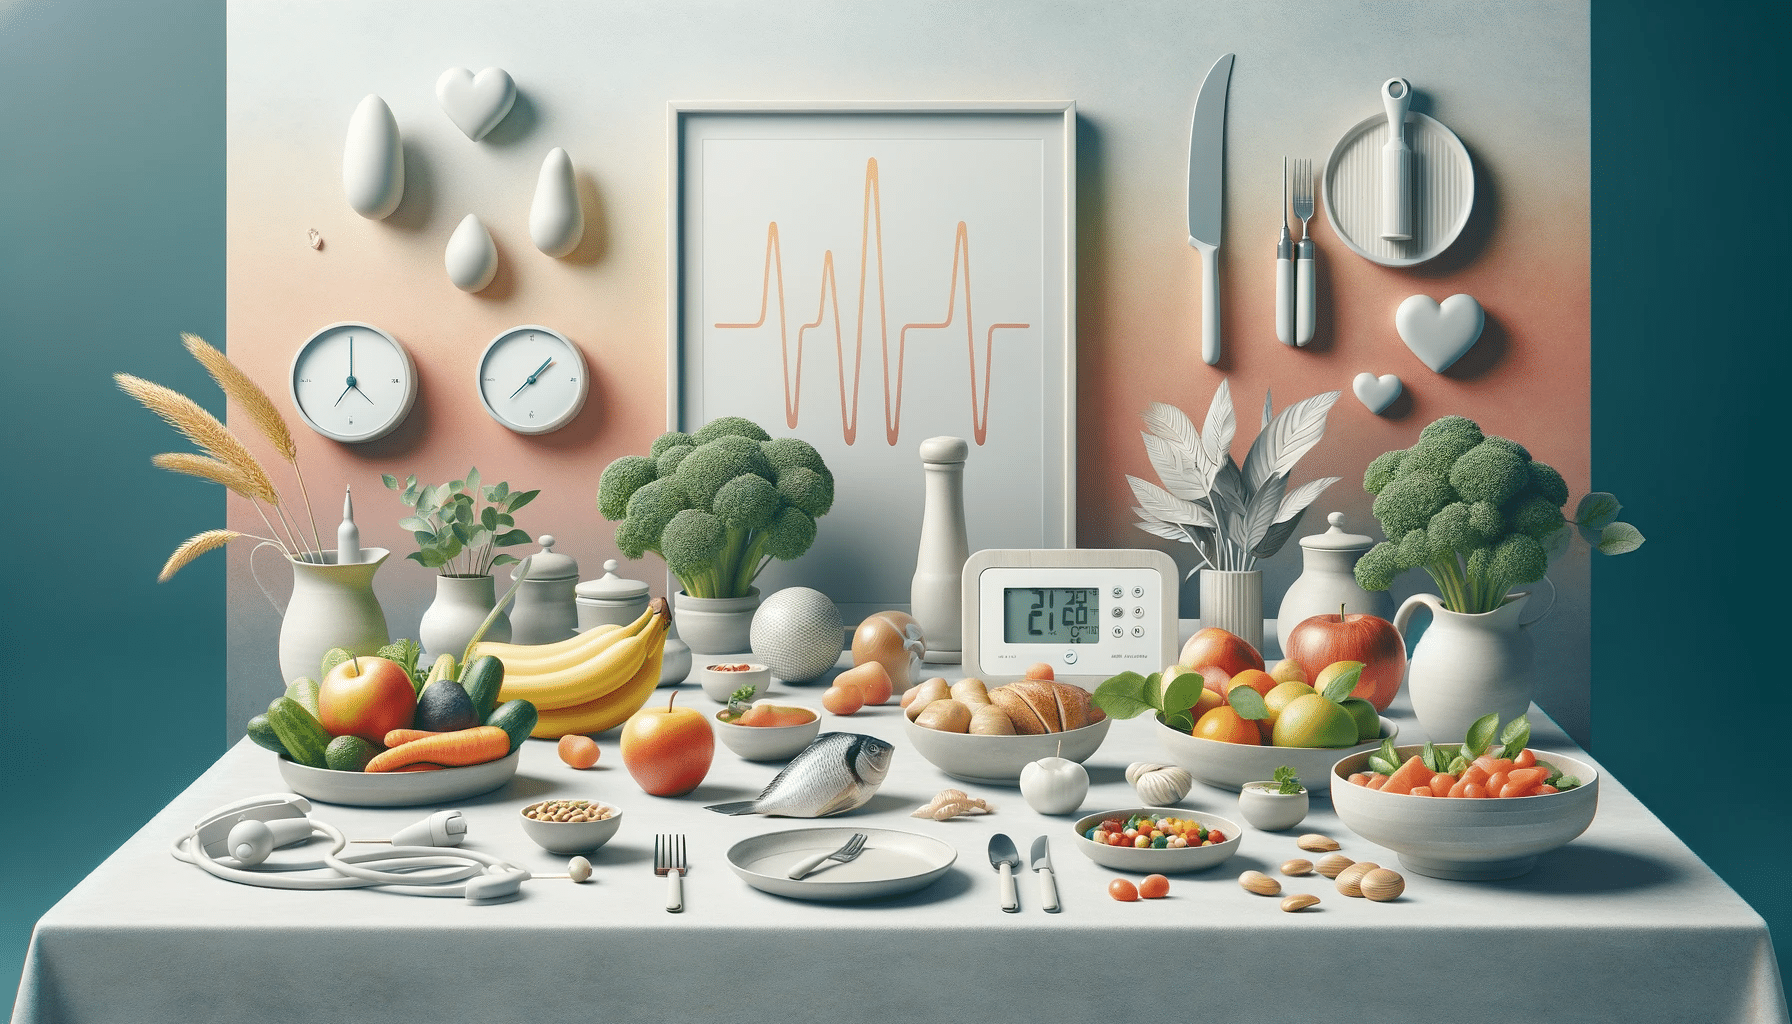 "Promovendo saúde e equilíbrio: A Dieta DASH e sua jornada para reduzir a pressão arterial."